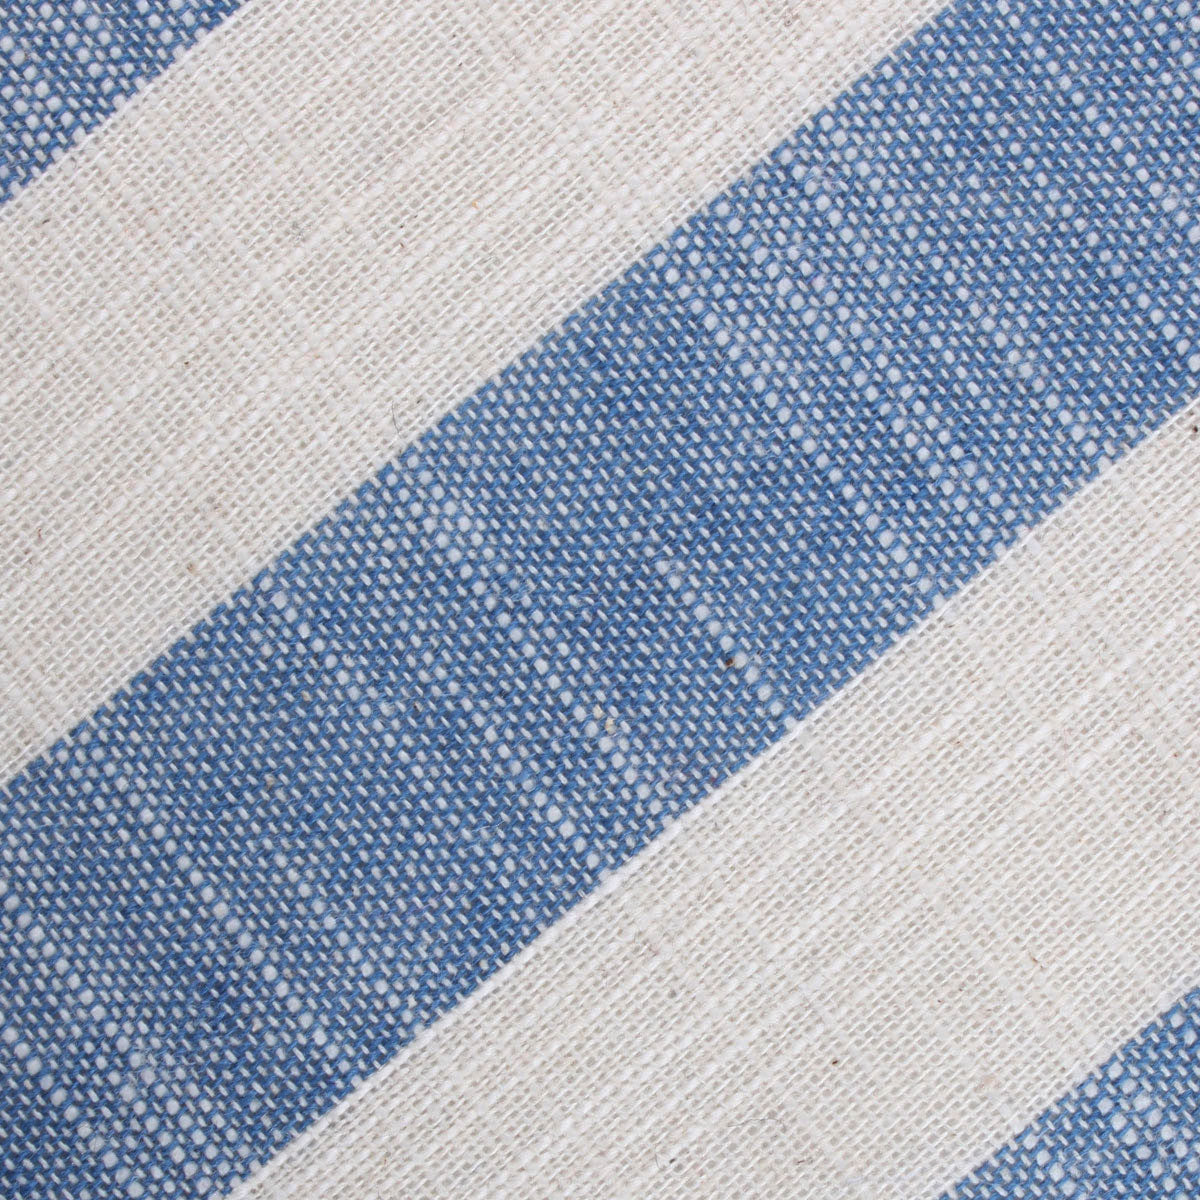 Kara Ada Light Blue Striped Linen Fabric Kids Bowtie